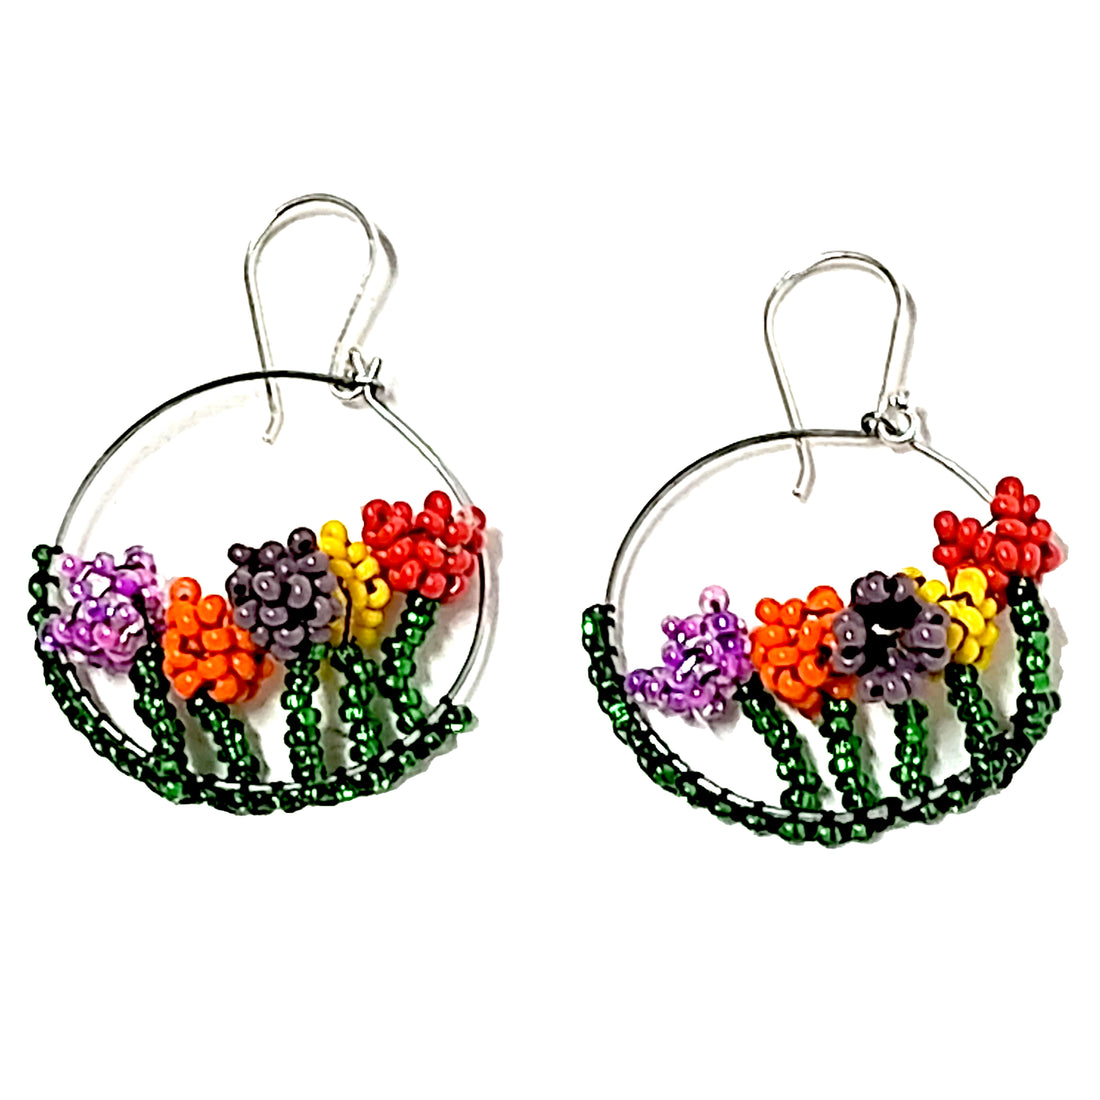 WHOLESALE Floral Garden Earrings - 925 Silver Hooks